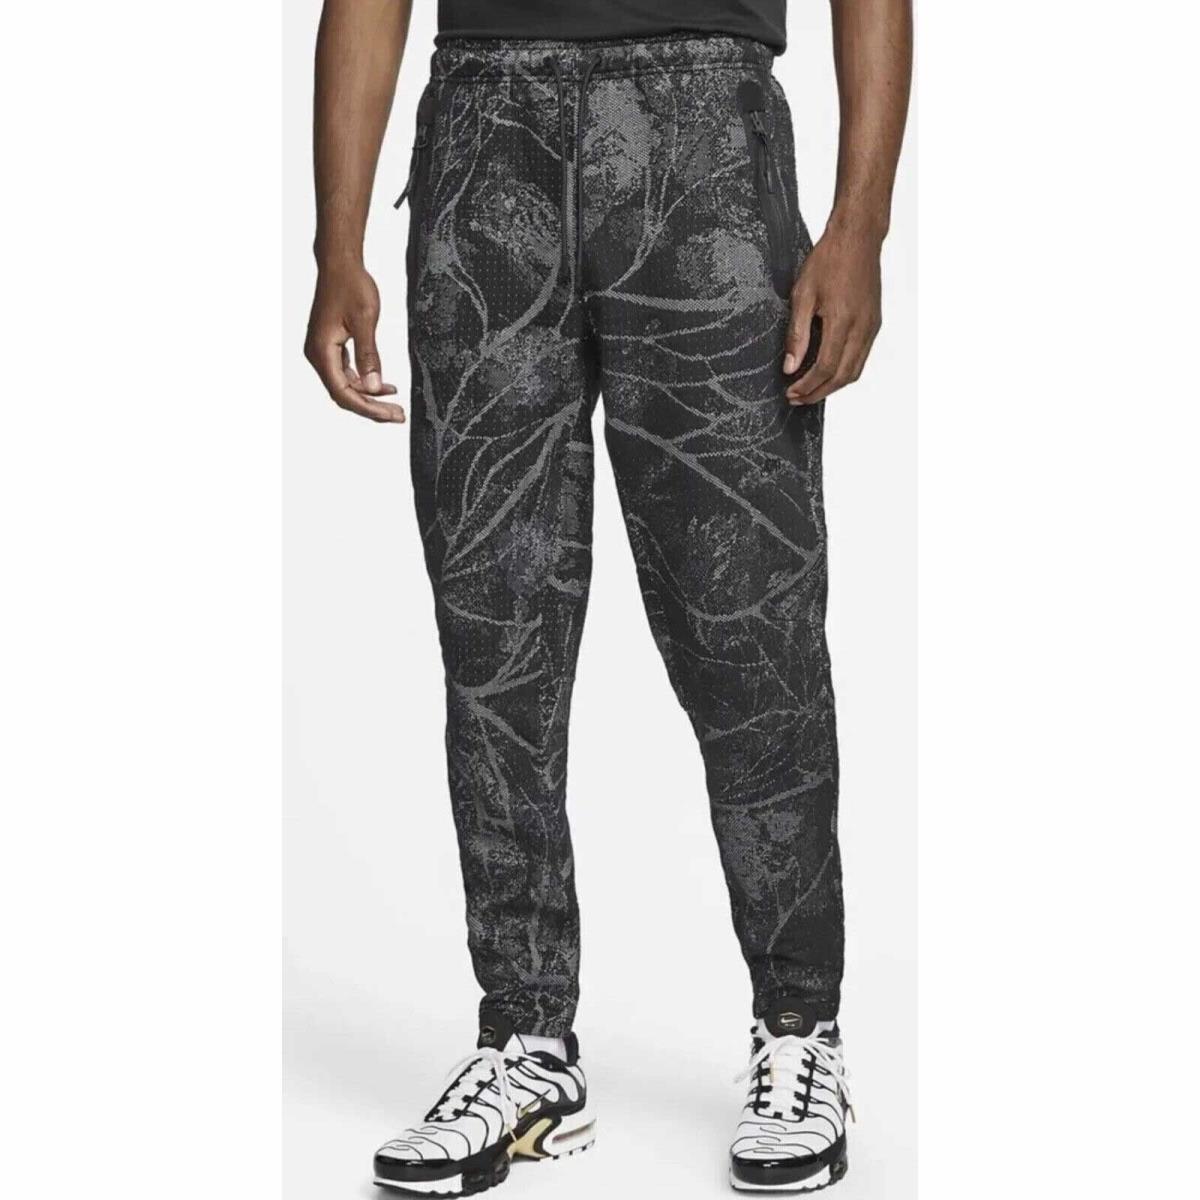 Nike Sportswear Therma-fit Adv Tech Pack Black Pants DX8048-010 Men s M